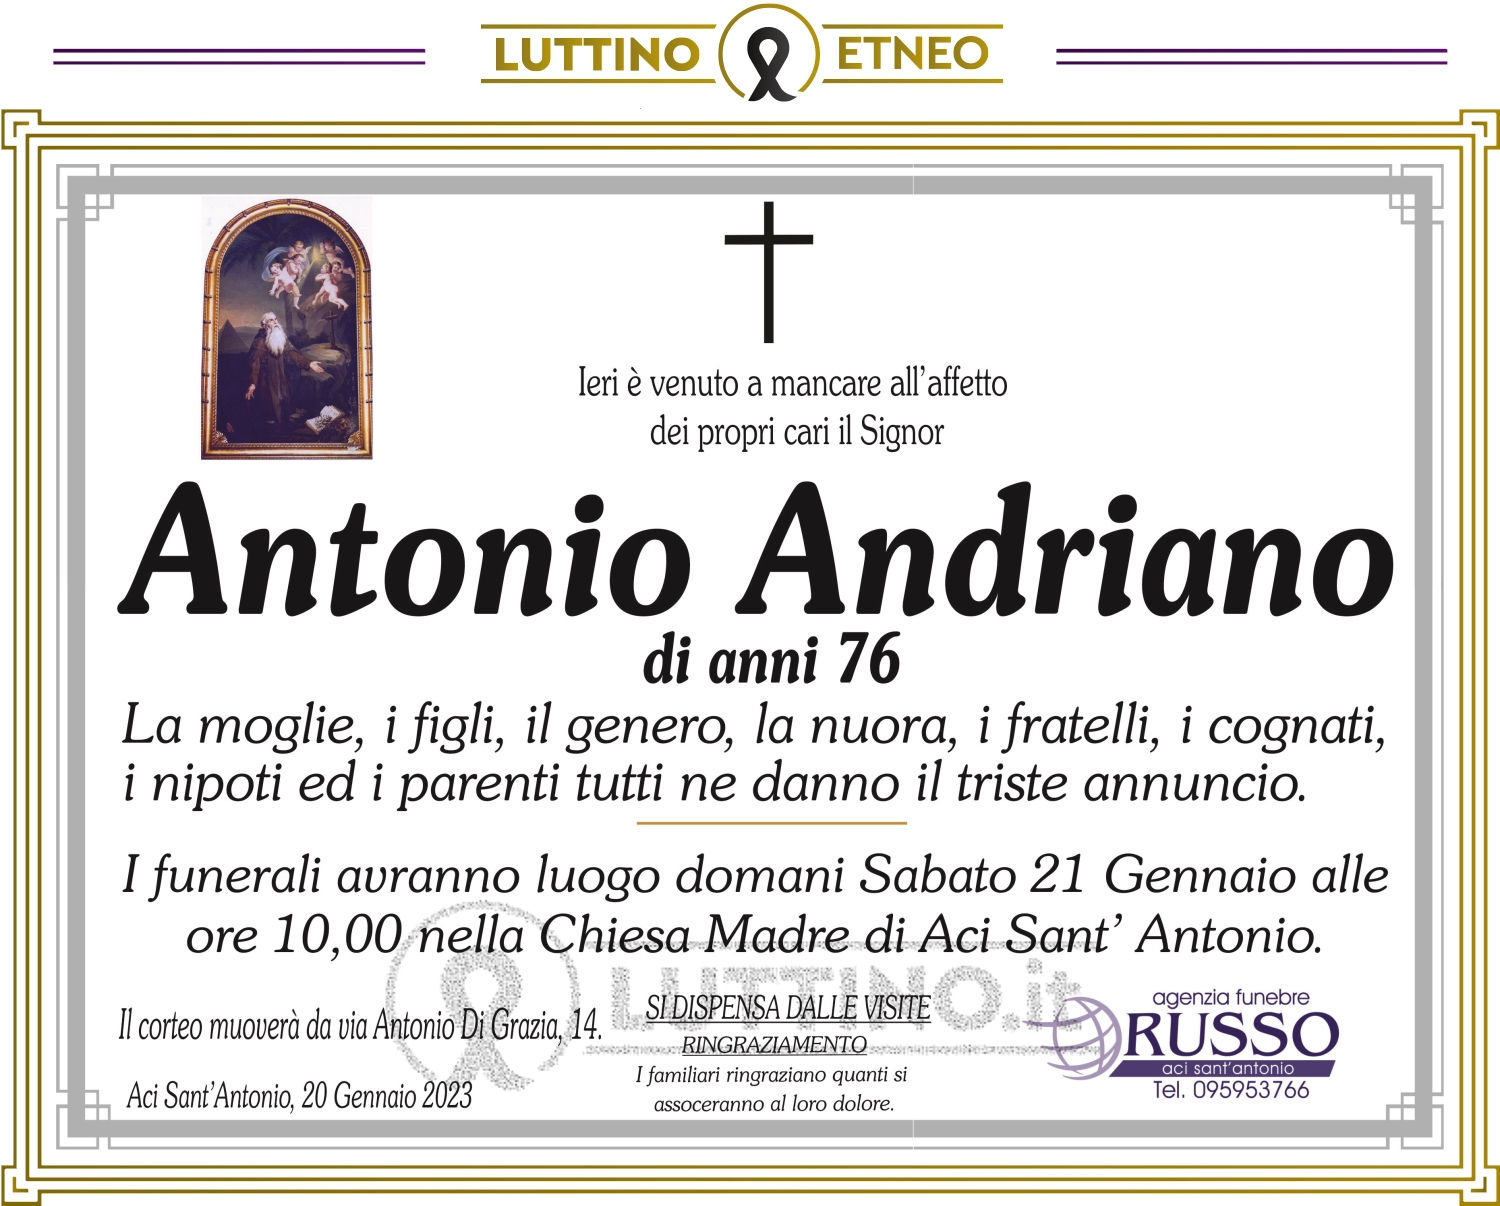 Antonino Andriano